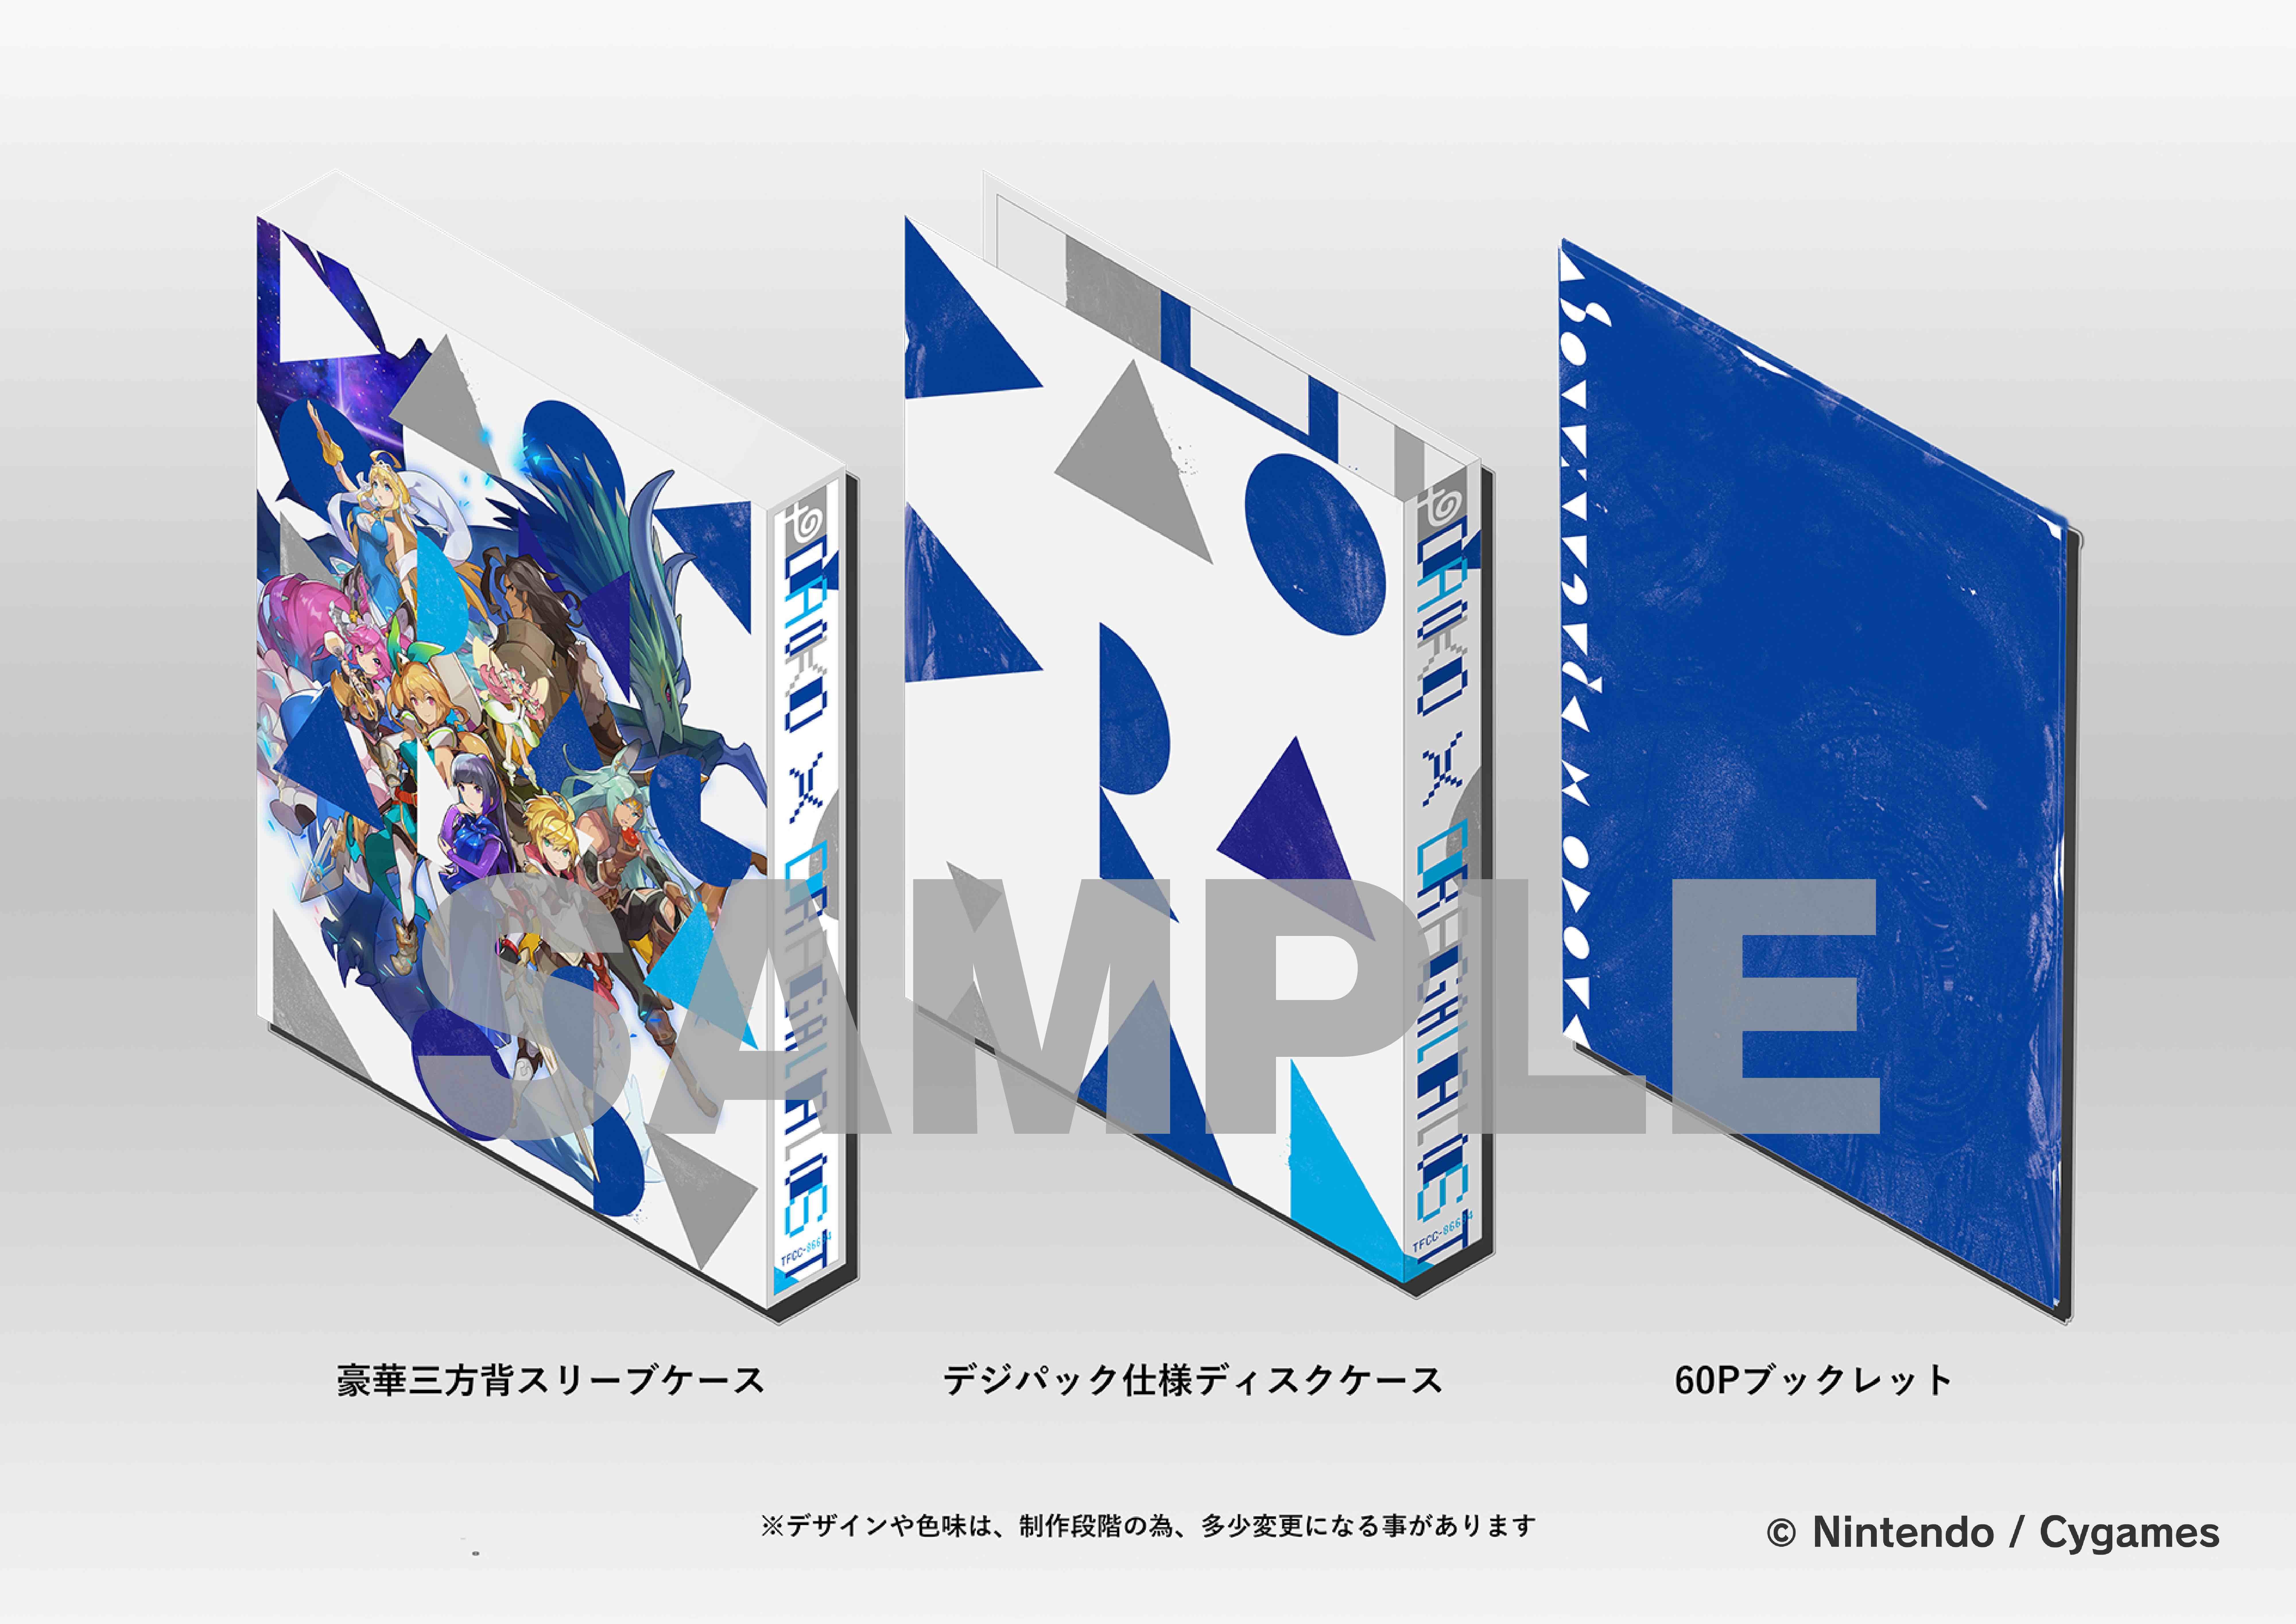 「DAOKO × ドラガリアロスト」初回限定盤 図解 (C)Nintendo/Cygames